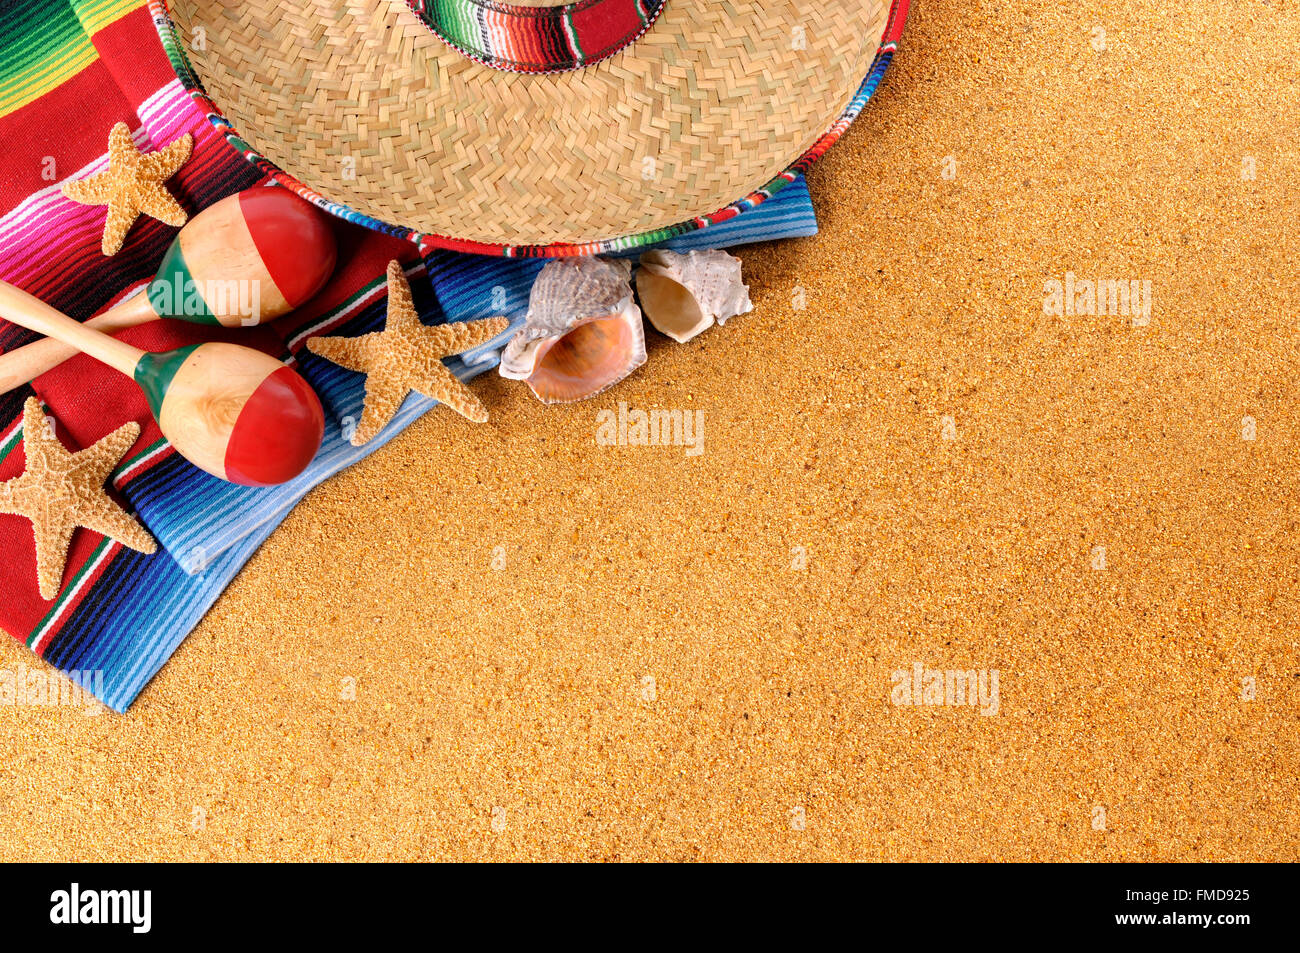 Mexikanischen Strand Hintergrund mit Stroh Sombrero-Hut, traditionelle Sarape Decke, Seesterne, Muscheln und Maracas.  Platz für Kopie. Stockfoto